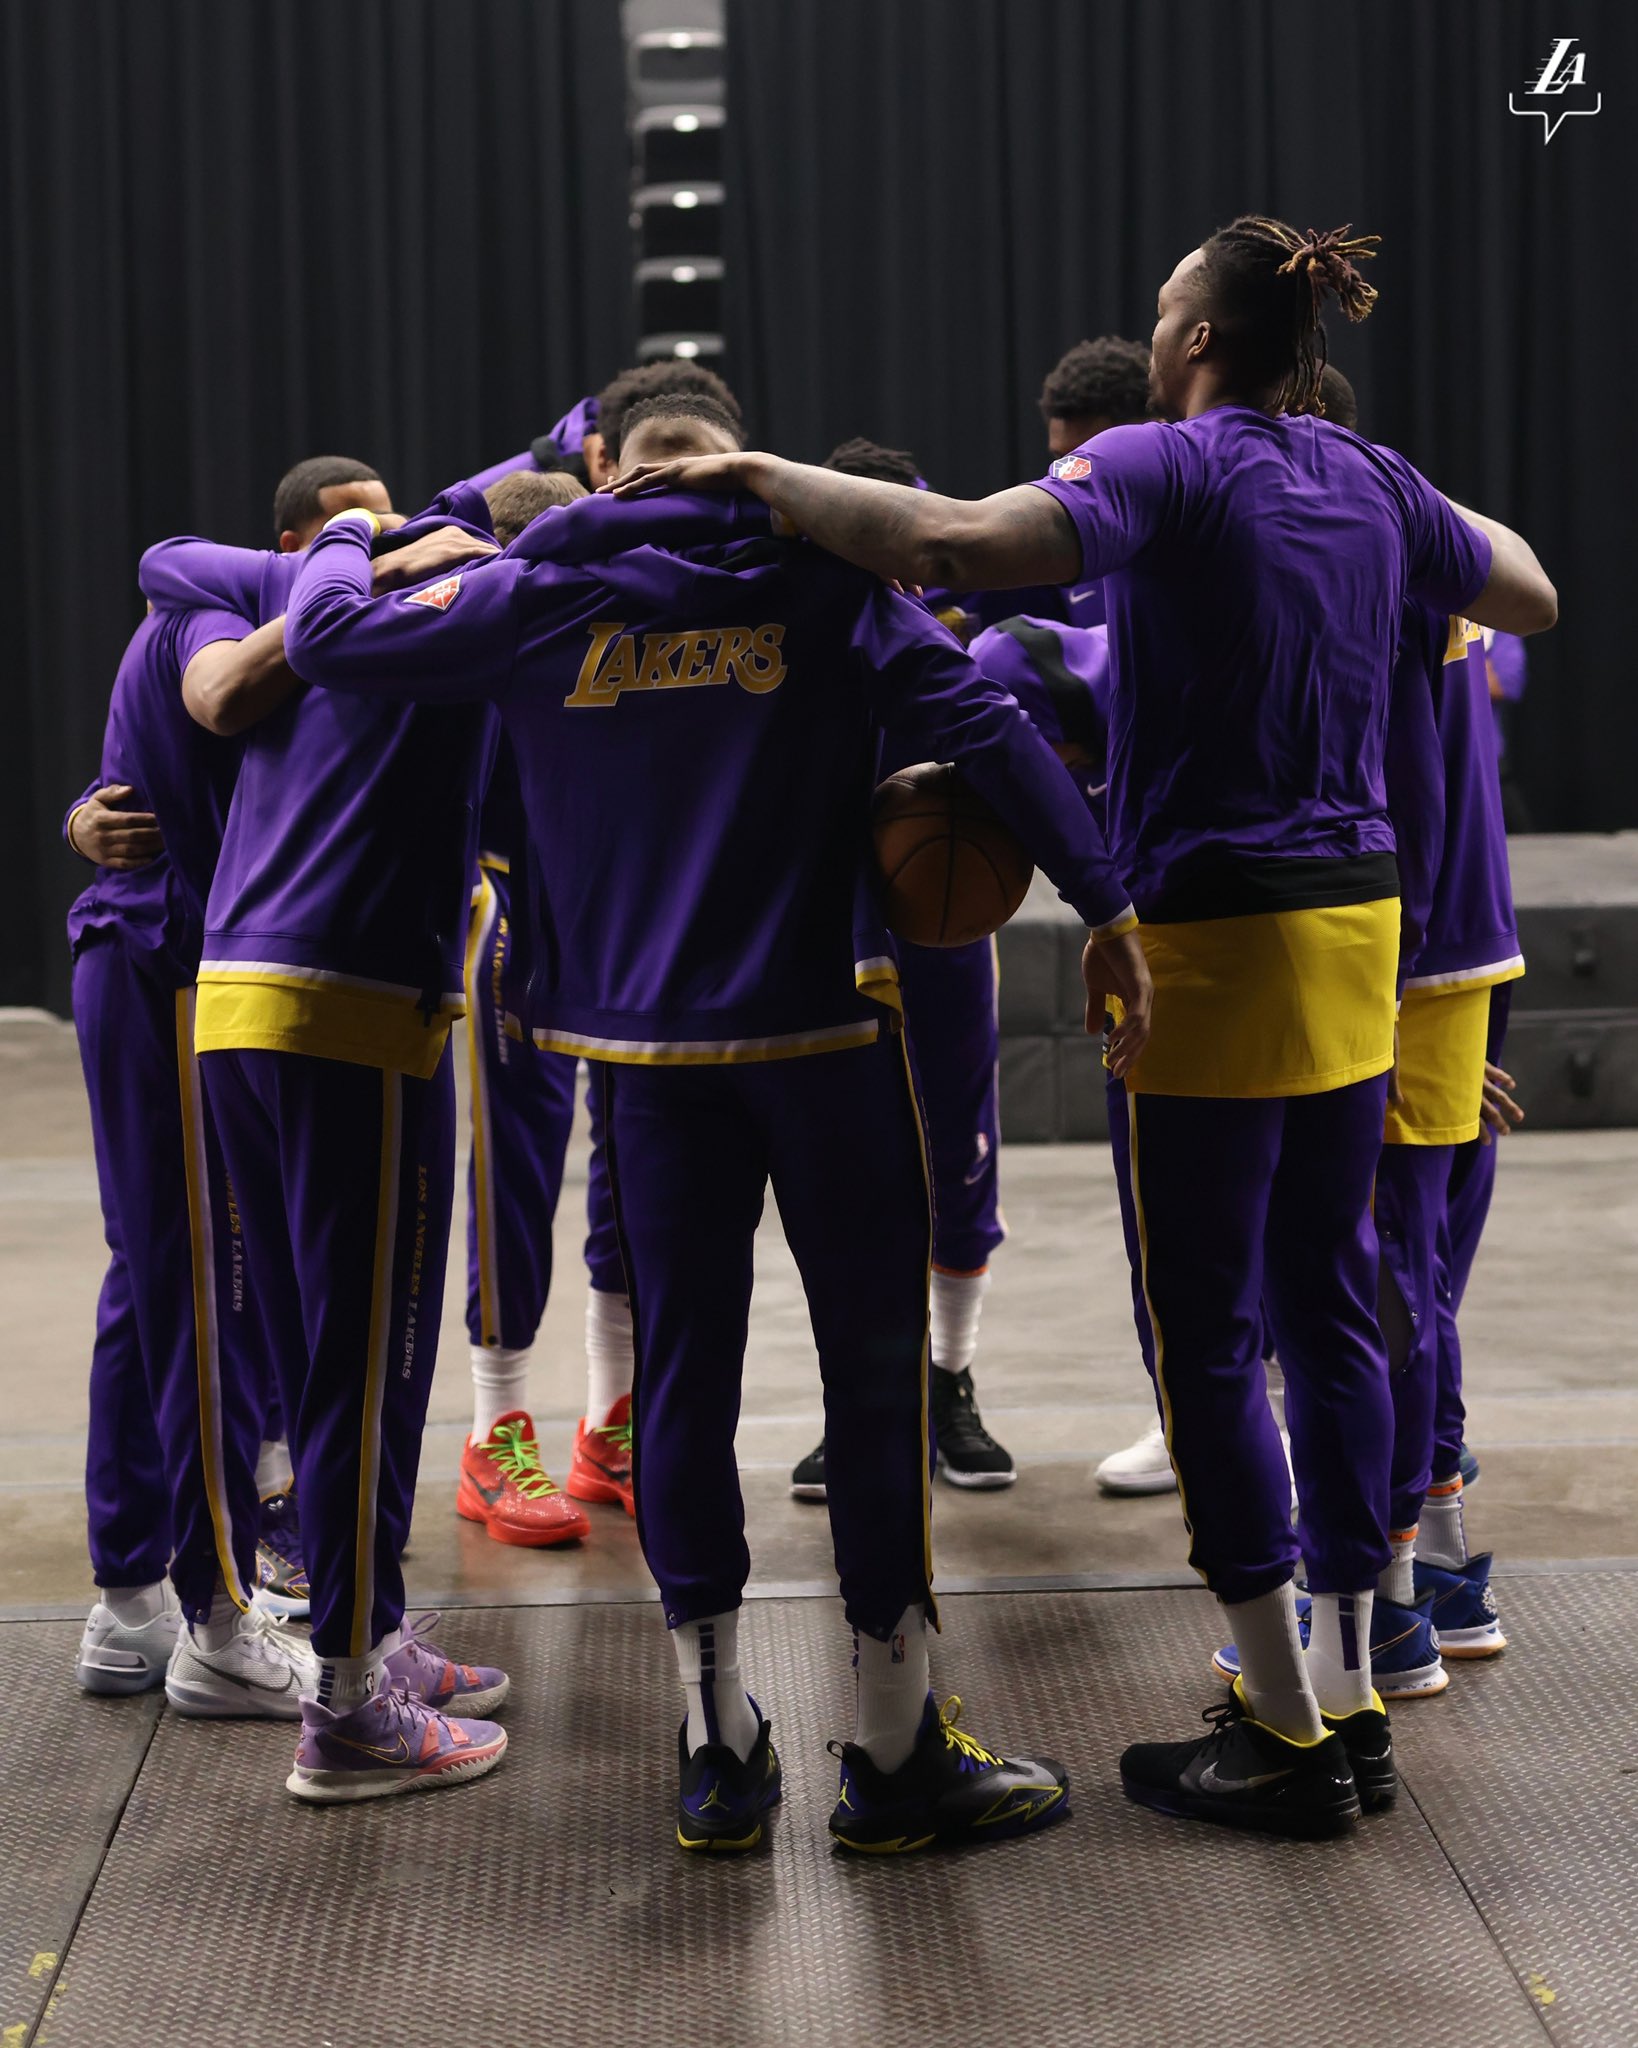 Los Lakers se quedan sin "playoff" tras caer ante Phoenix